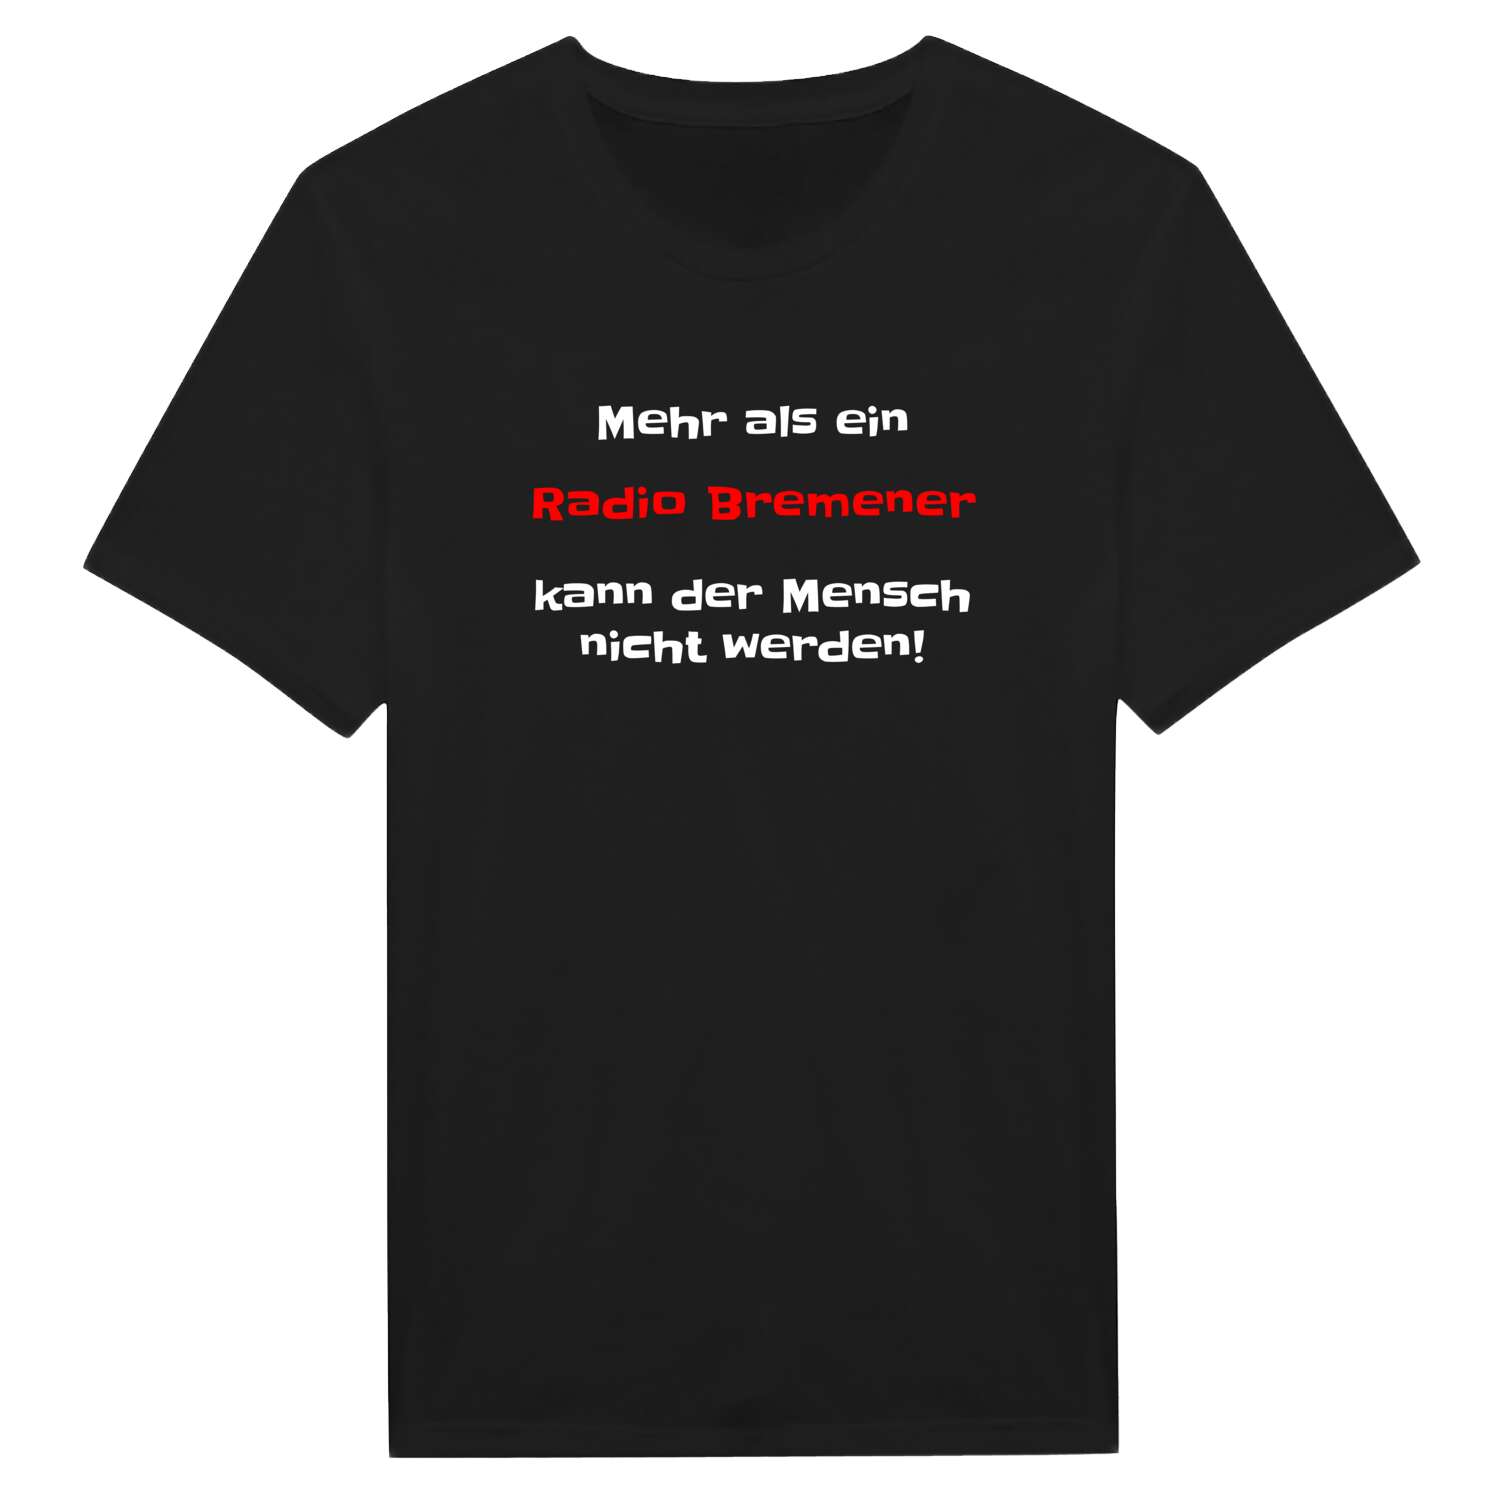 Radio Bremen T-Shirt »Mehr als ein«